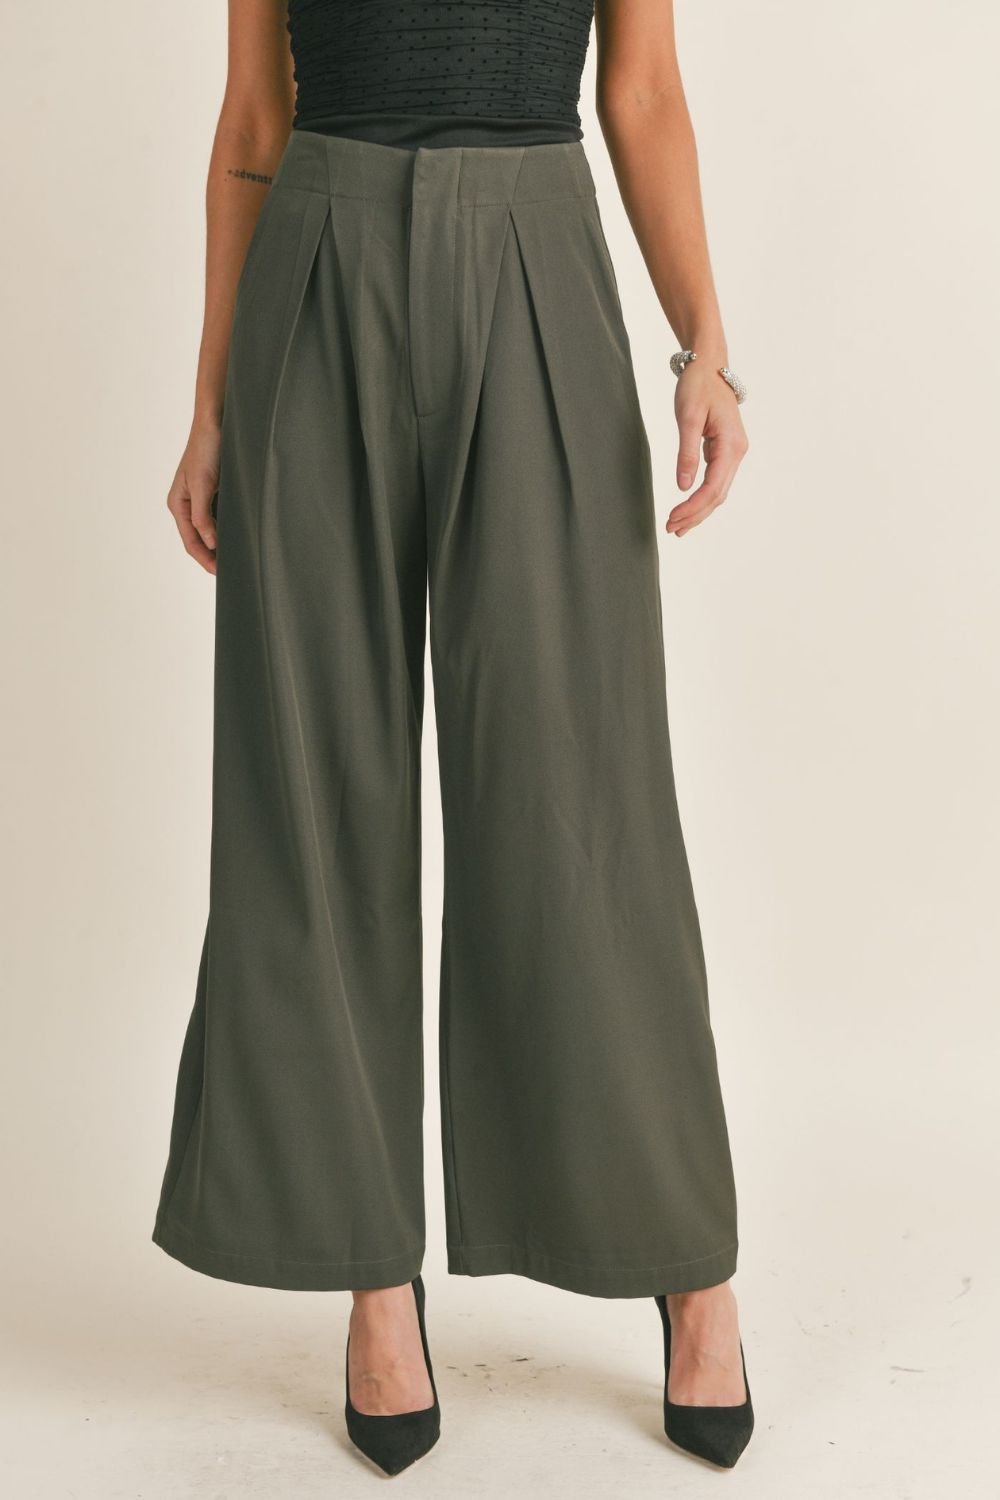 Buy Ecru Trousers & Pants for Women by RITU KUMAR Online | Ajio.com